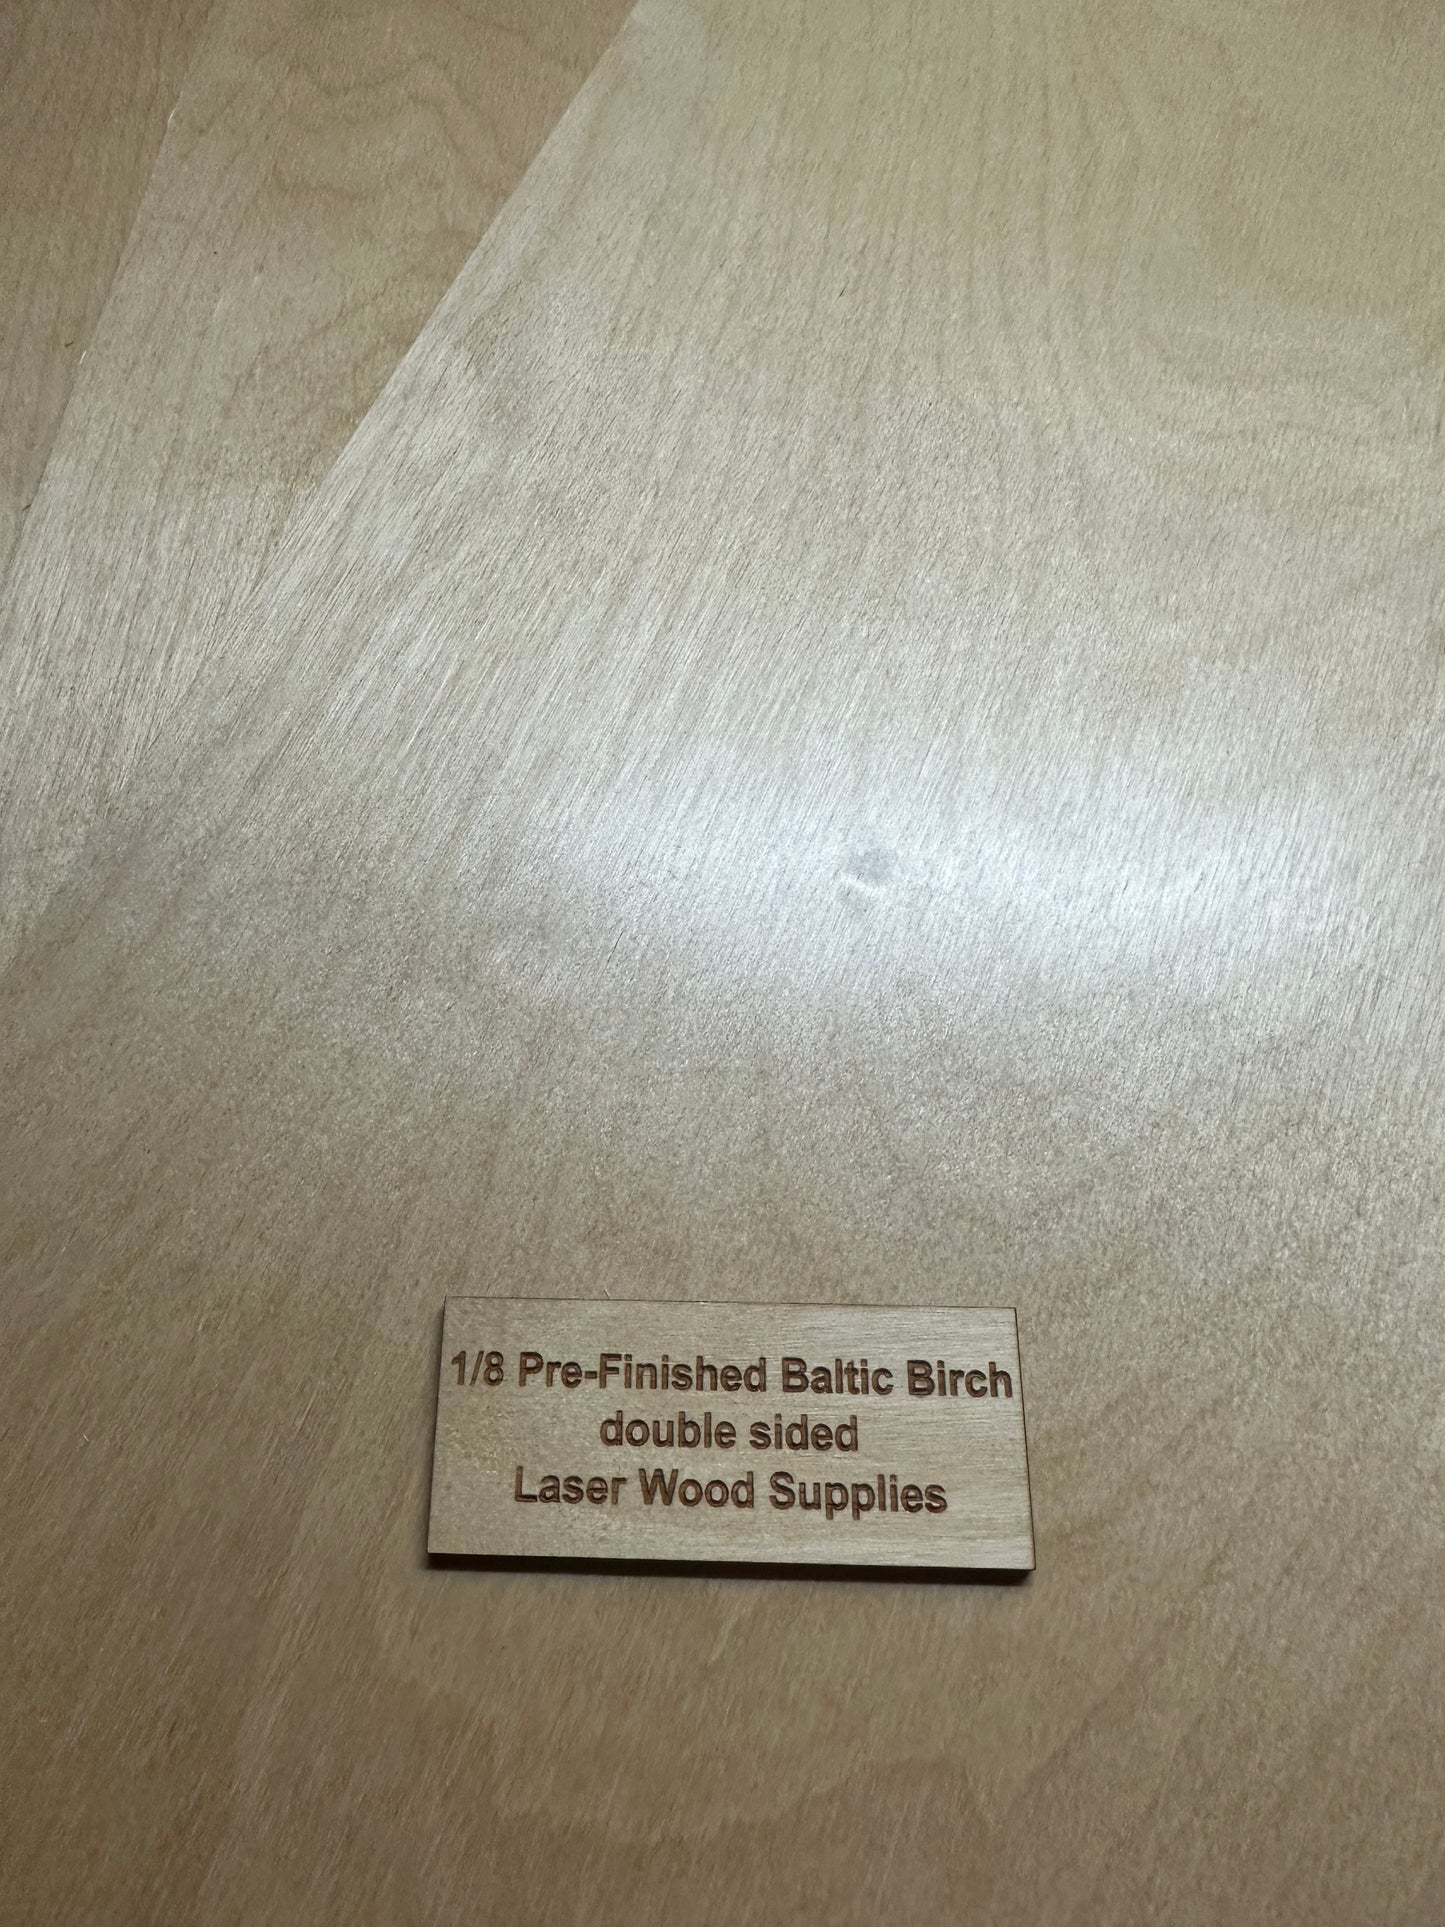 Laser Wood Supplies